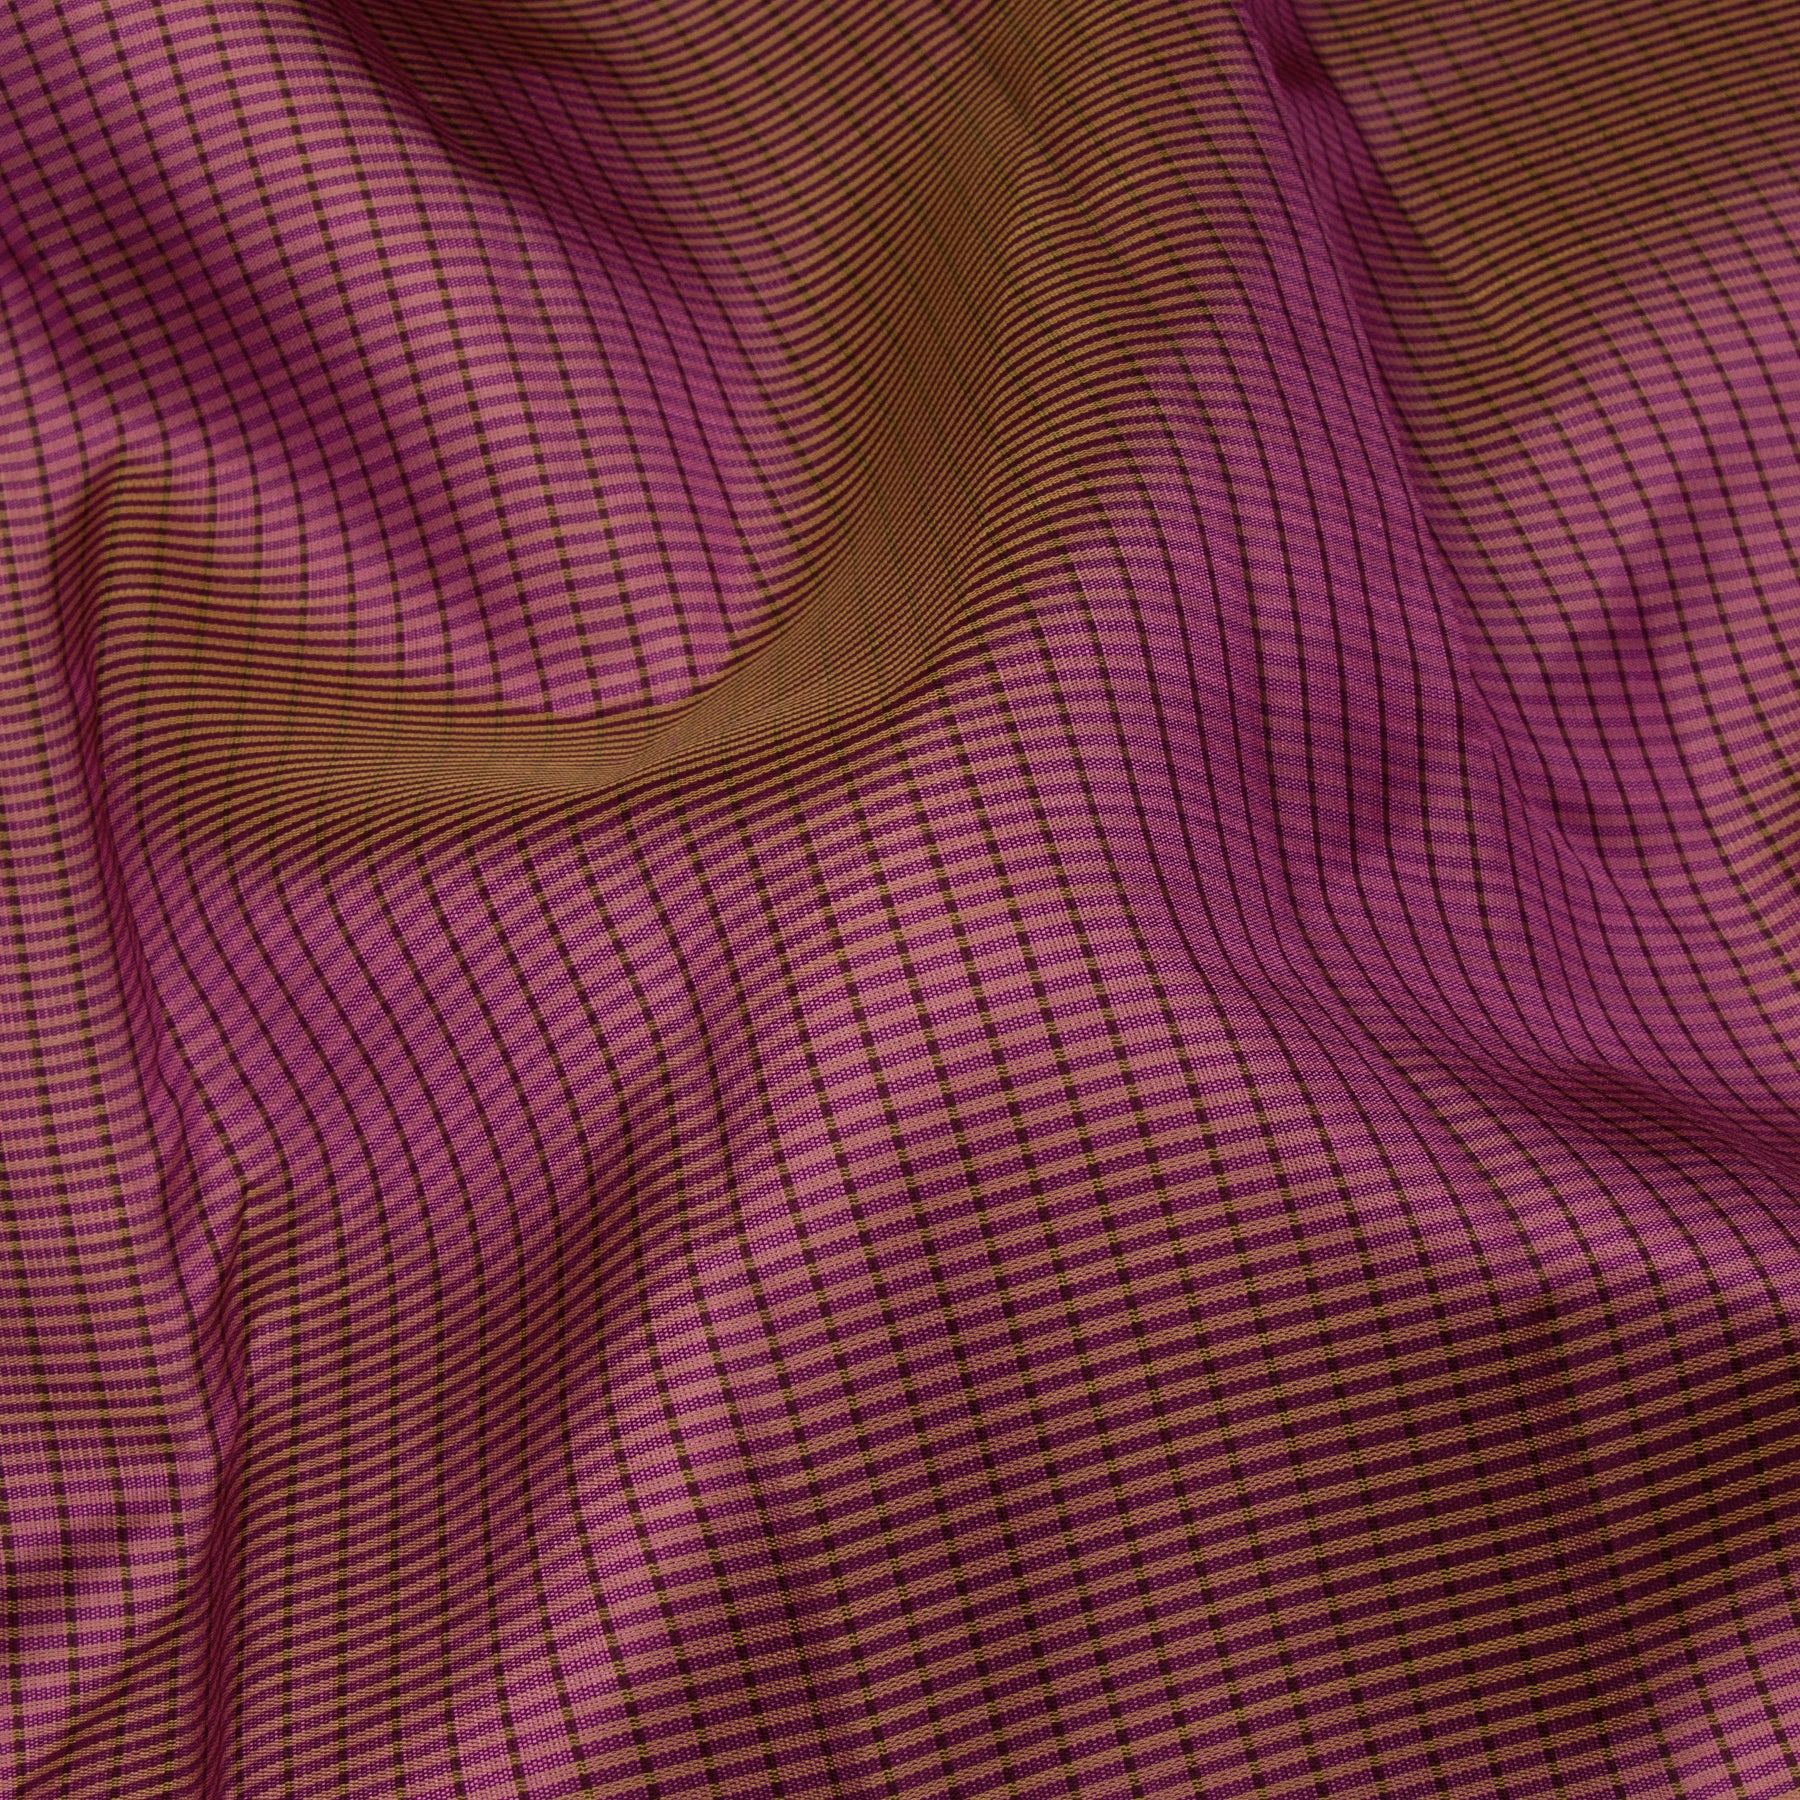 Kanakavalli Kanjivaram Silk Sari 23-595-HS001-13705 - Fabric View